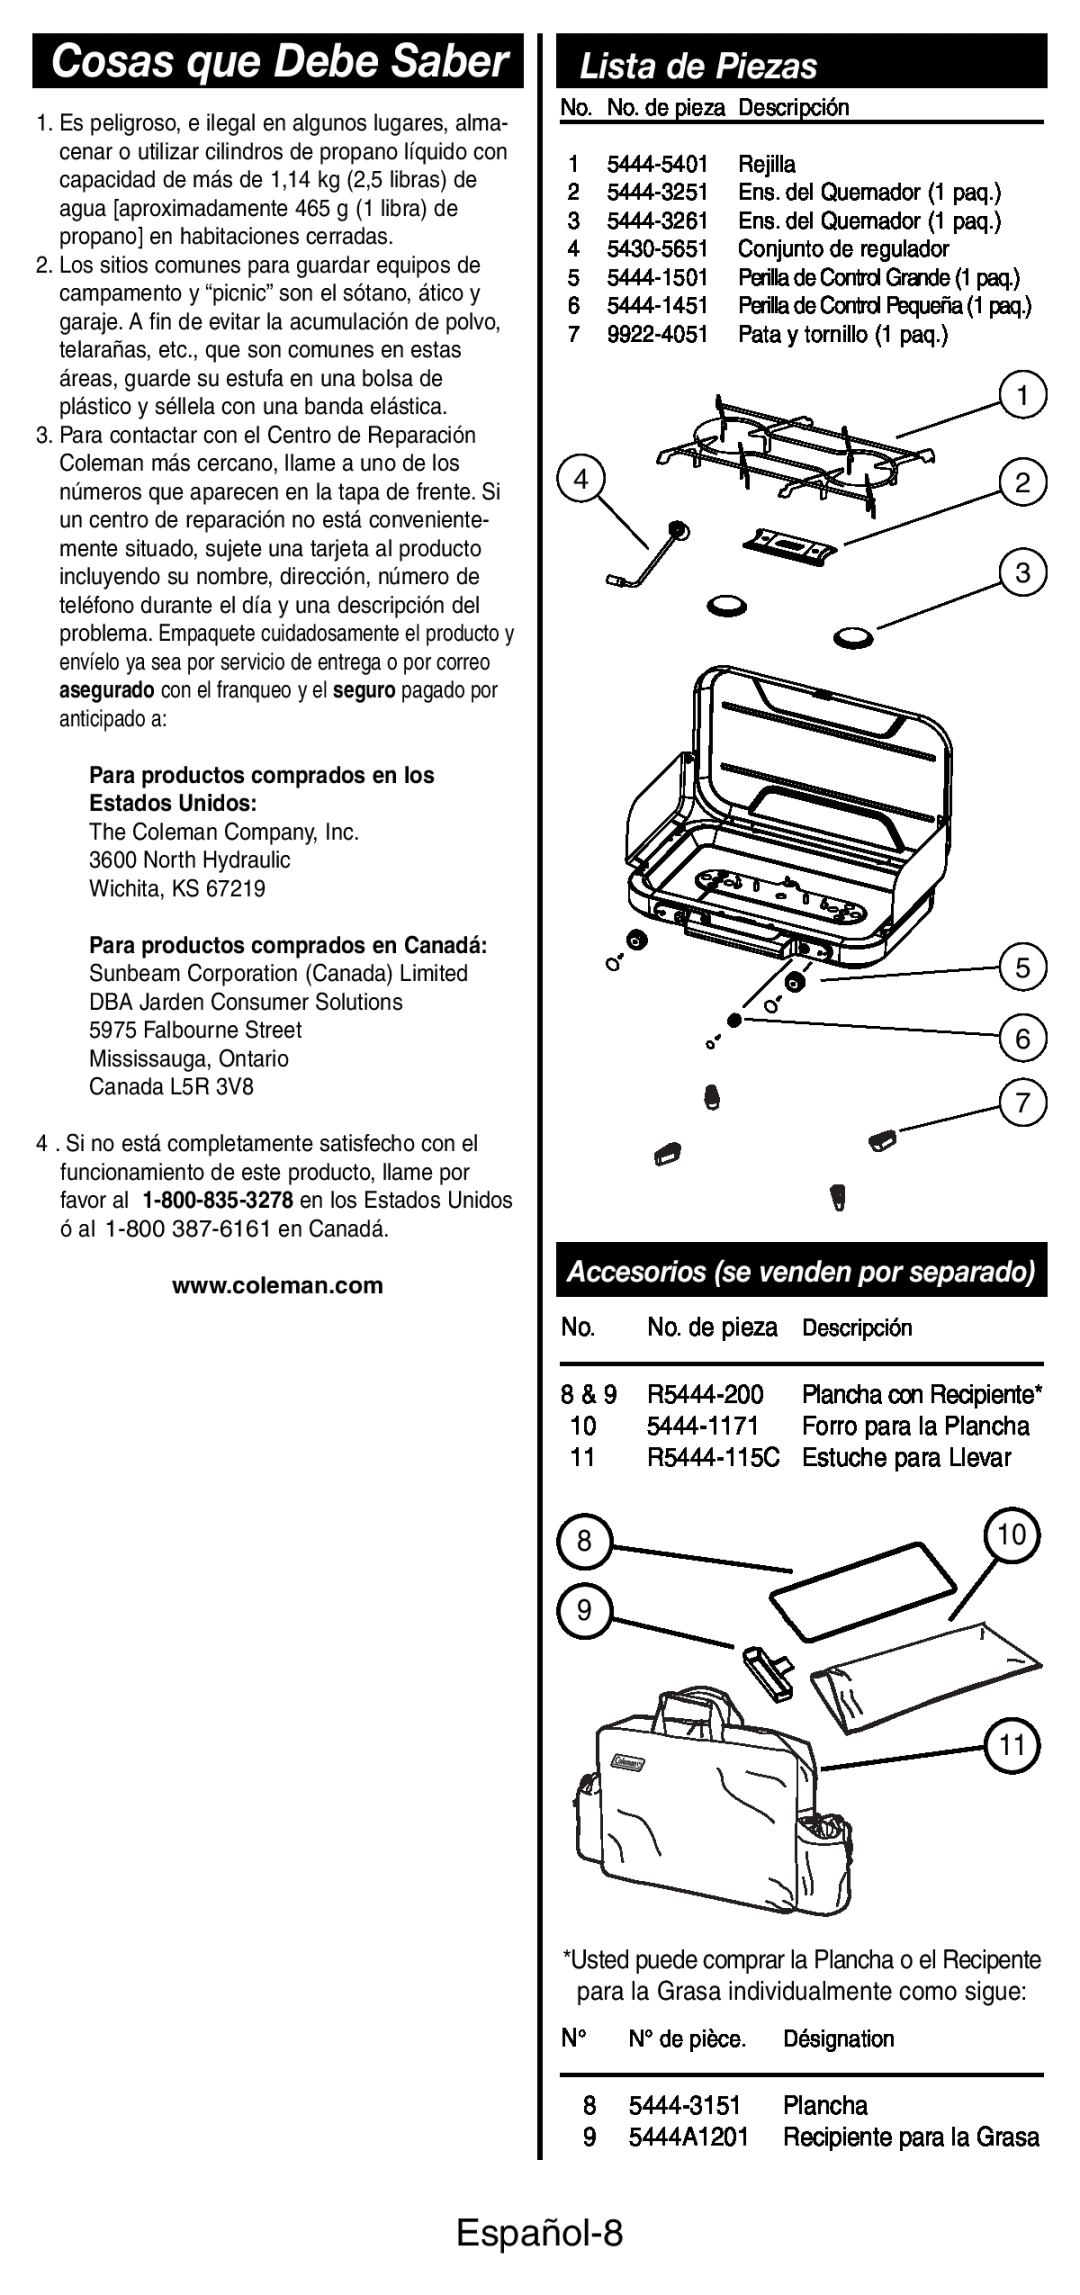 Coleman 5444 Series manual Cosas que Debe Saber, Lista de Piezas, Español-8, Accesorios se venden por separado 